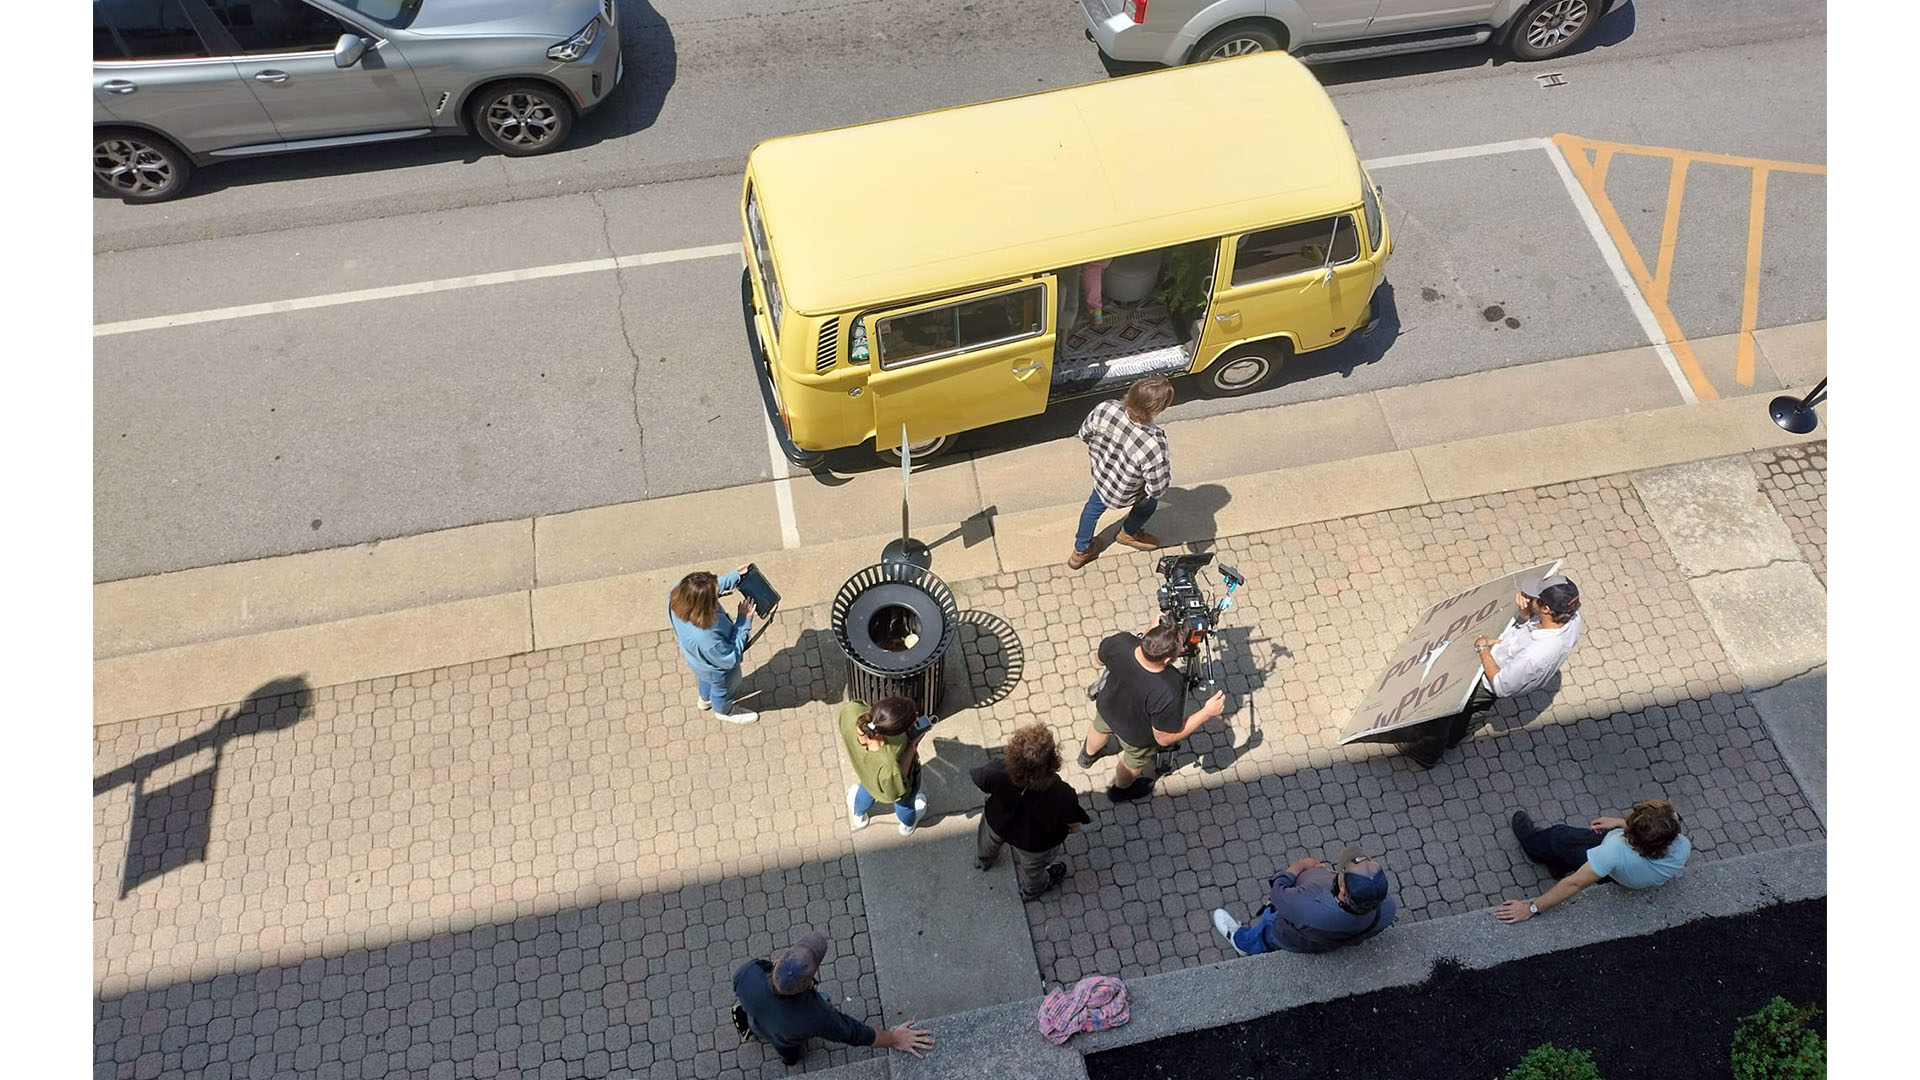 crew - on street with van